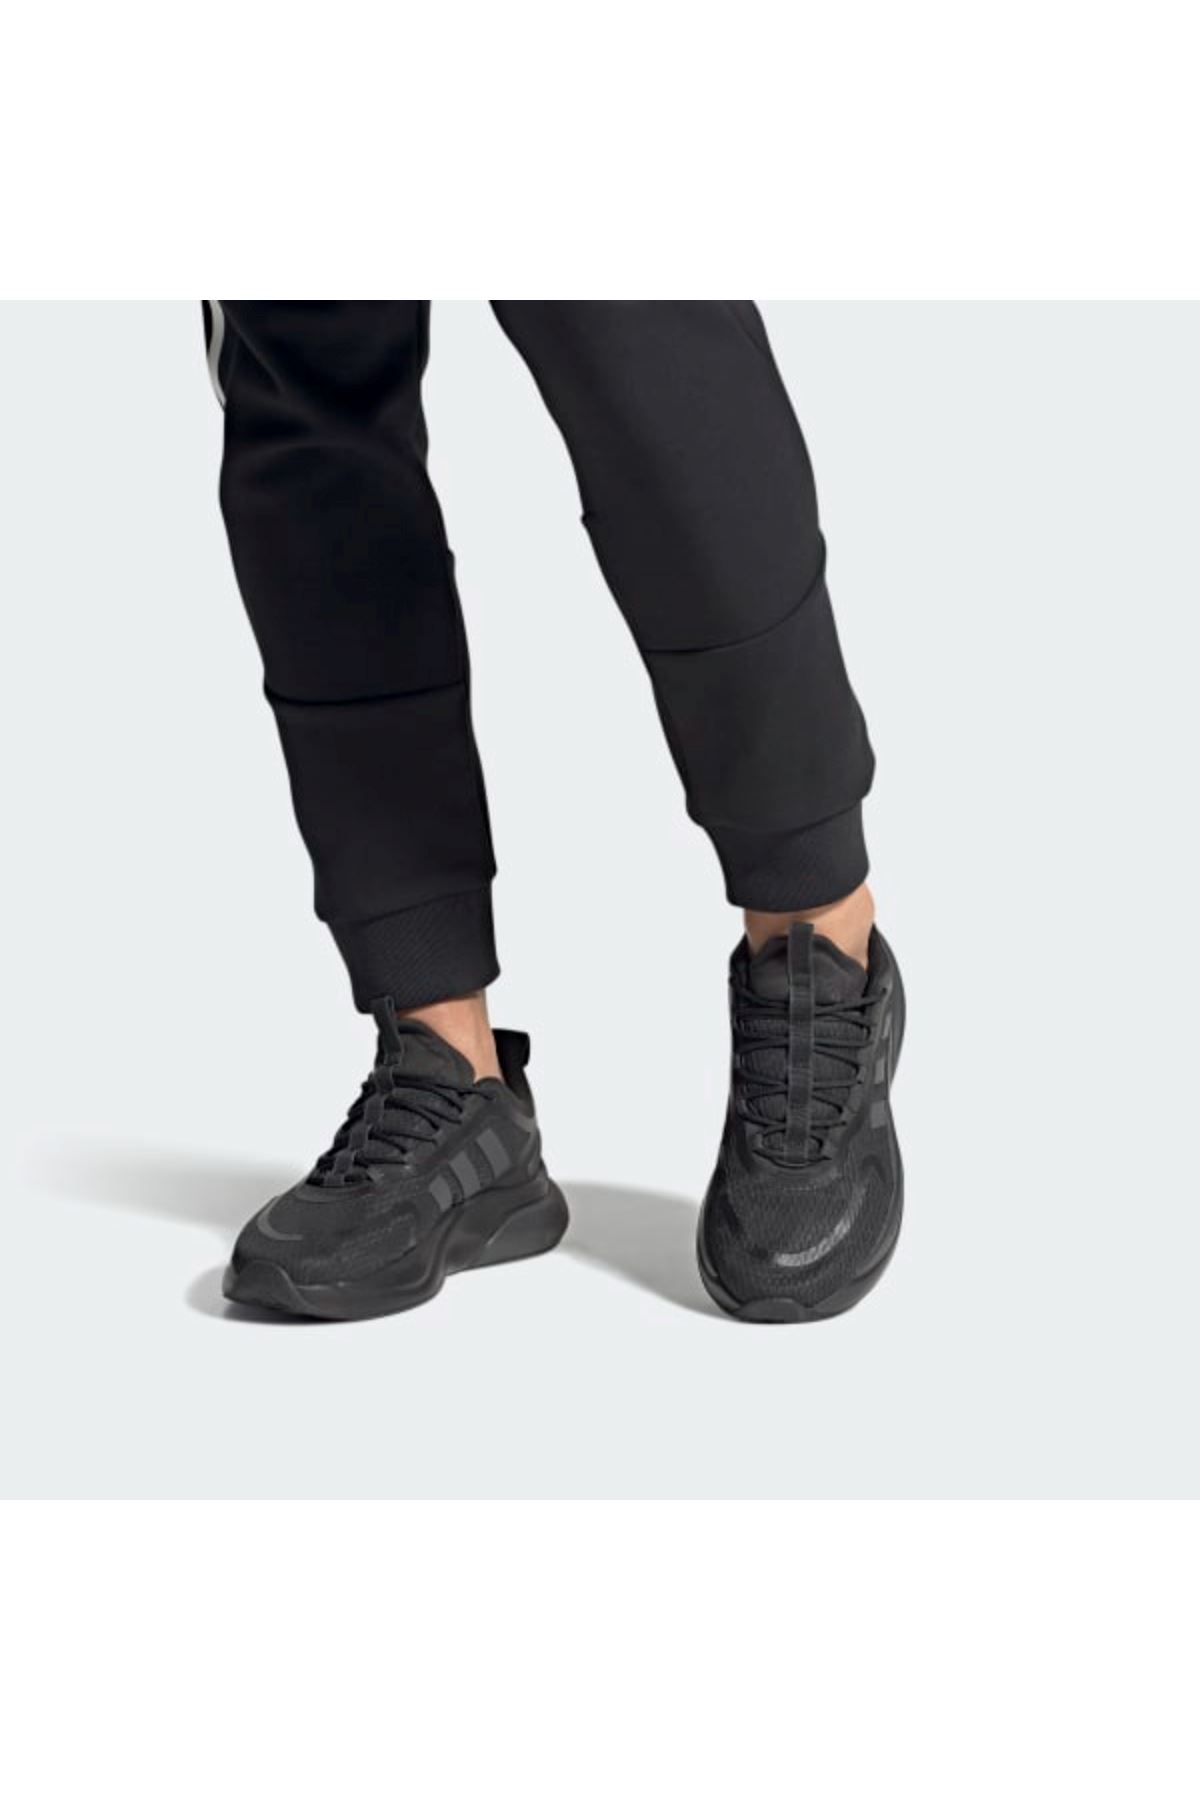 Adidas Alphabounce + Erkek Siyah Spor Ayakkabı - HP6142